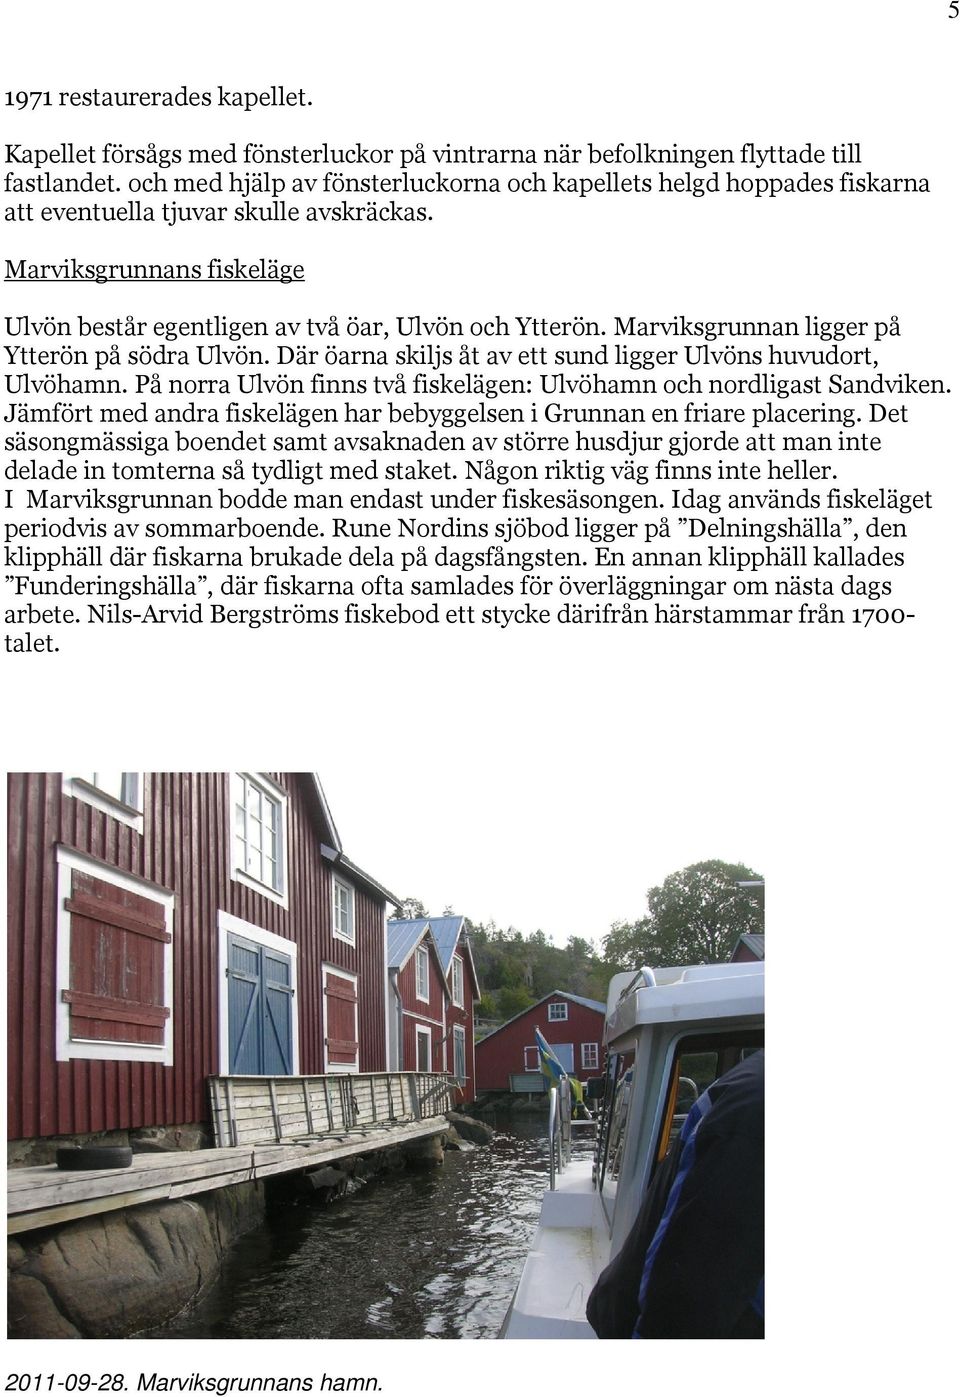 Marviksgrunnan ligger på Ytterön på södra Ulvön. Där öarna skiljs åt av ett sund ligger Ulvöns huvudort, Ulvöhamn. På norra Ulvön finns två fiskelägen: Ulvöhamn och nordligast Sandviken.